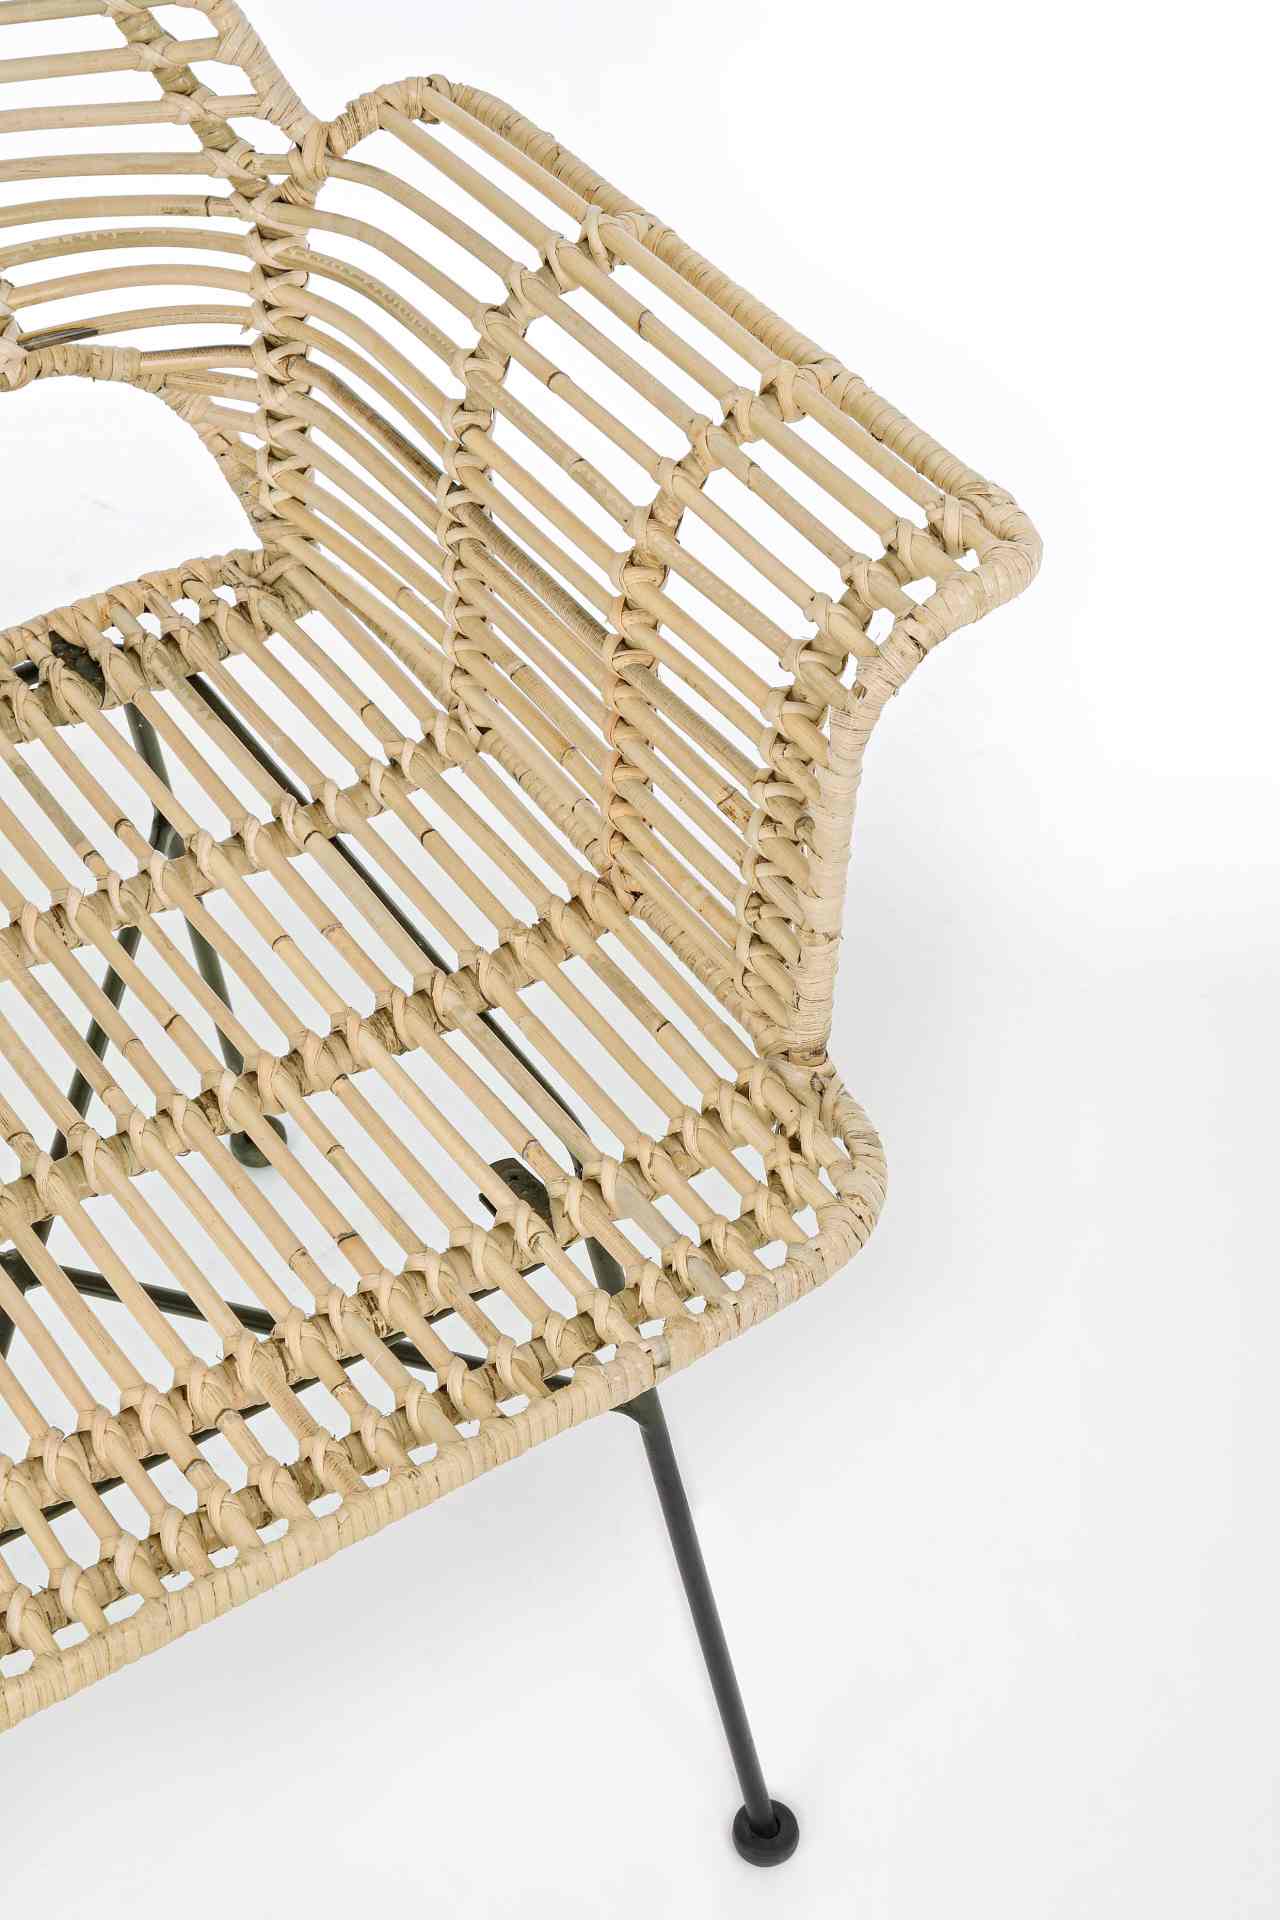 Der Stuhl Tunas überzeugt mit seinem modernem Design. Gefertigt wurde der Stuhl aus einem Kabugeflecht, welches einen natürlichen Farbton besitzt. Das Gestell ist aus Metall und ist Schwarz.